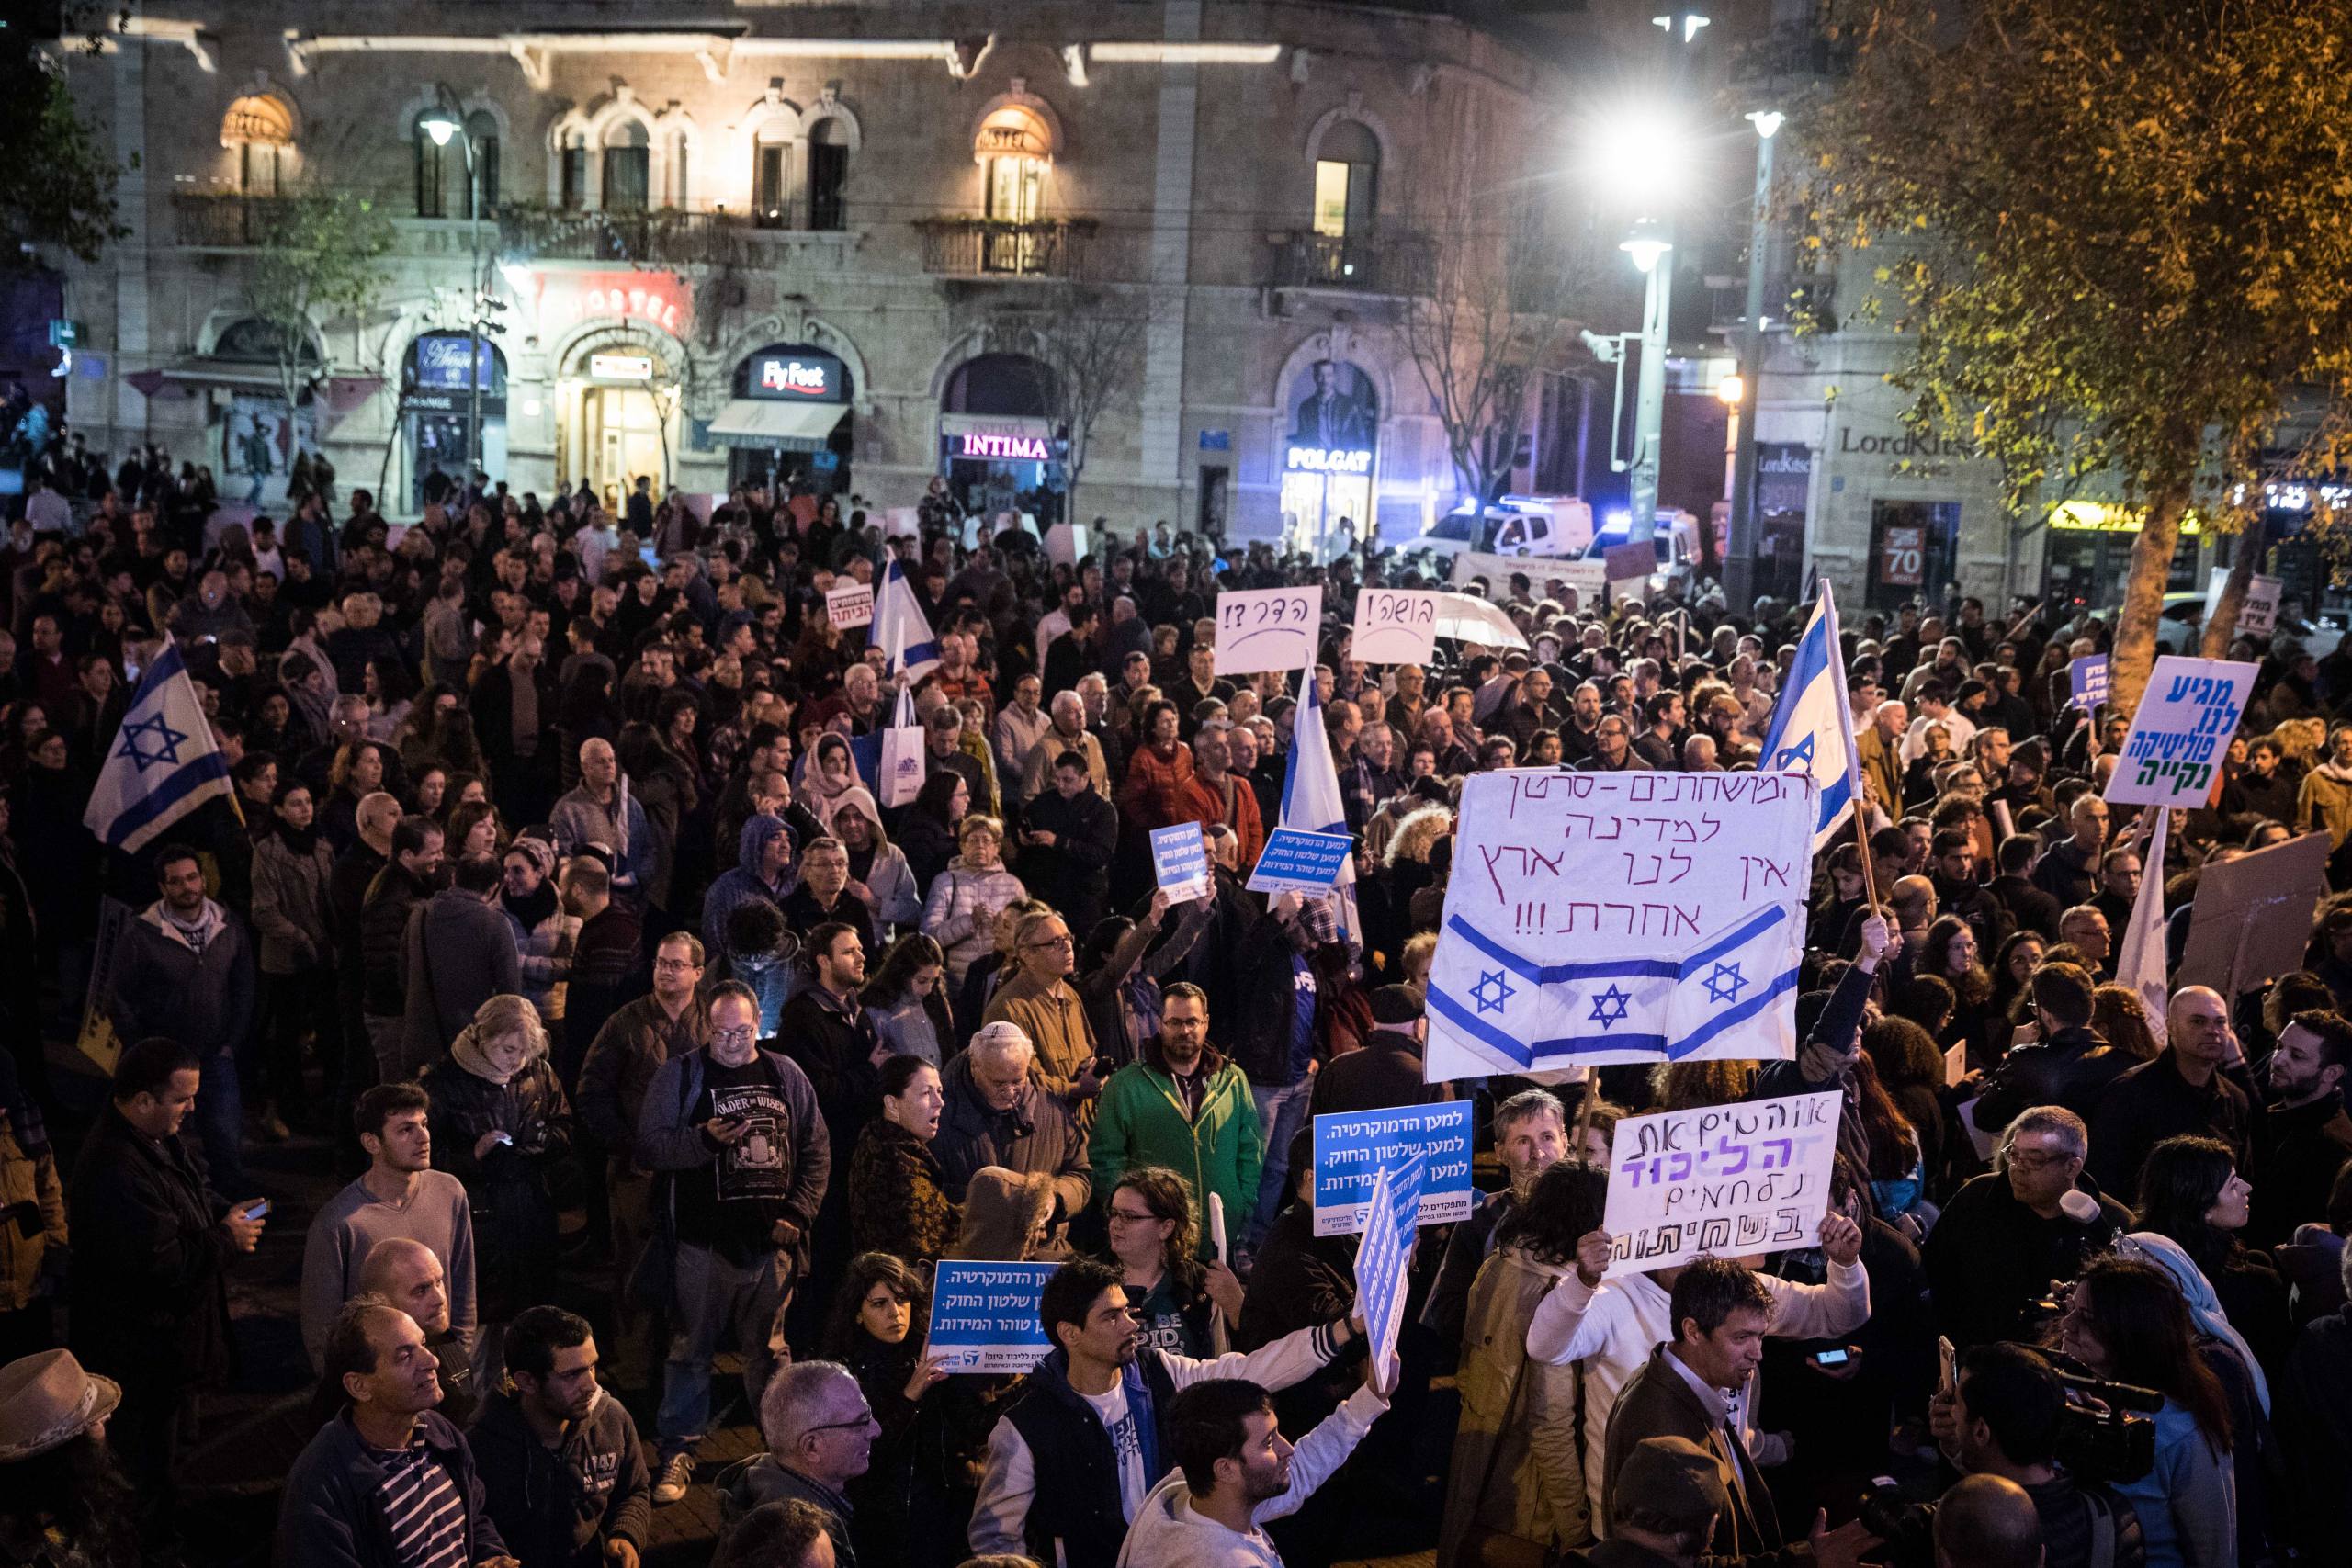 Israelis hold signs and shout slogans during a rally against the corruption of the government at Zion Square in Jerusalem on December 23, 2017. Photo by Hadas Parush/Flash90 *** Local Caption *** äôâðä
îôâéðéí
ääôâðä äùáåòéú ðâã ùçéúåú ùìèåðéú
éøåùìéí
ëéëø öéåï